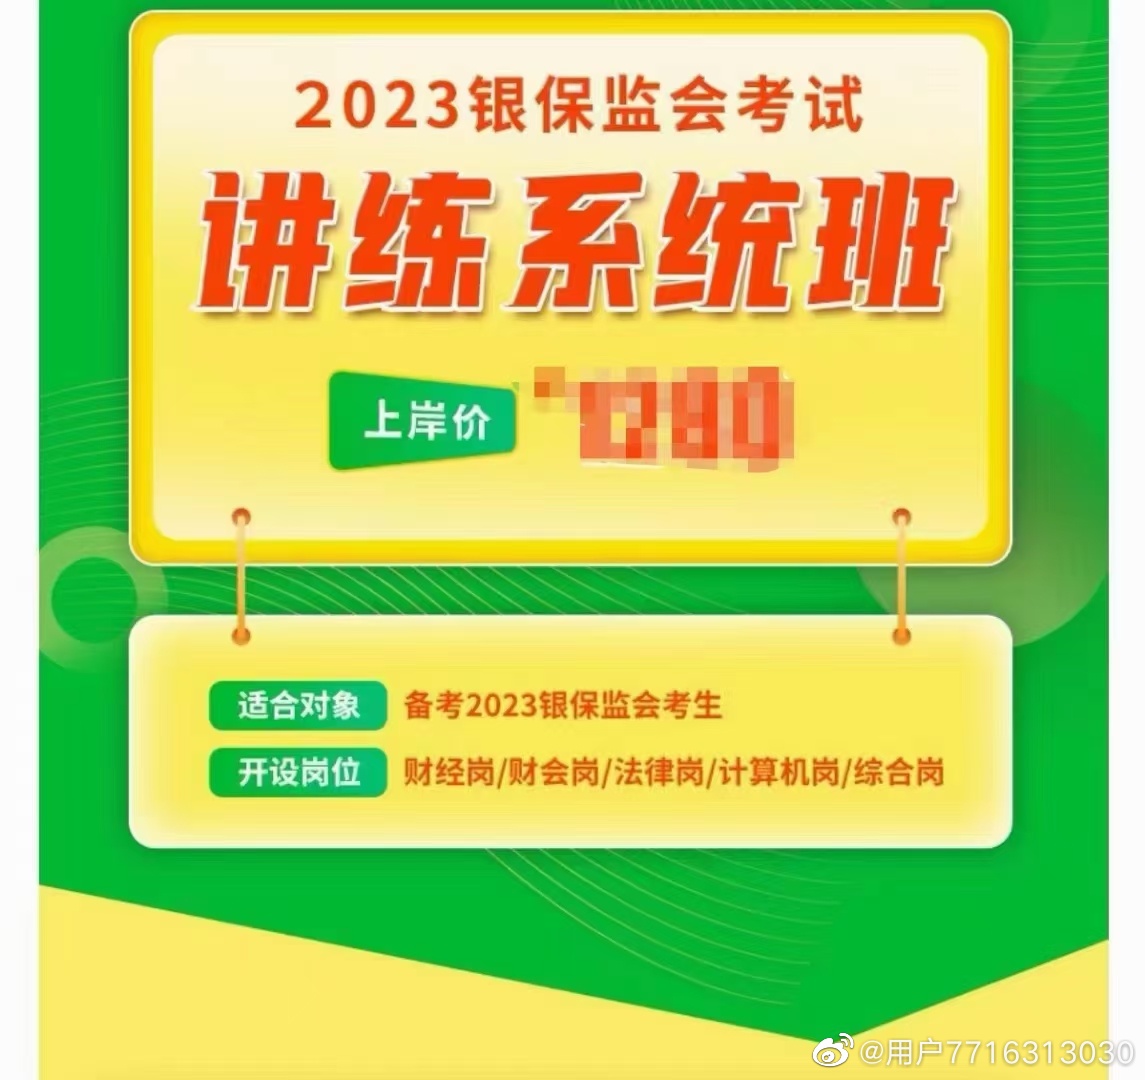 2023国考银保监会笔试系统班（财经/财会/法律/计算机/综合岗）